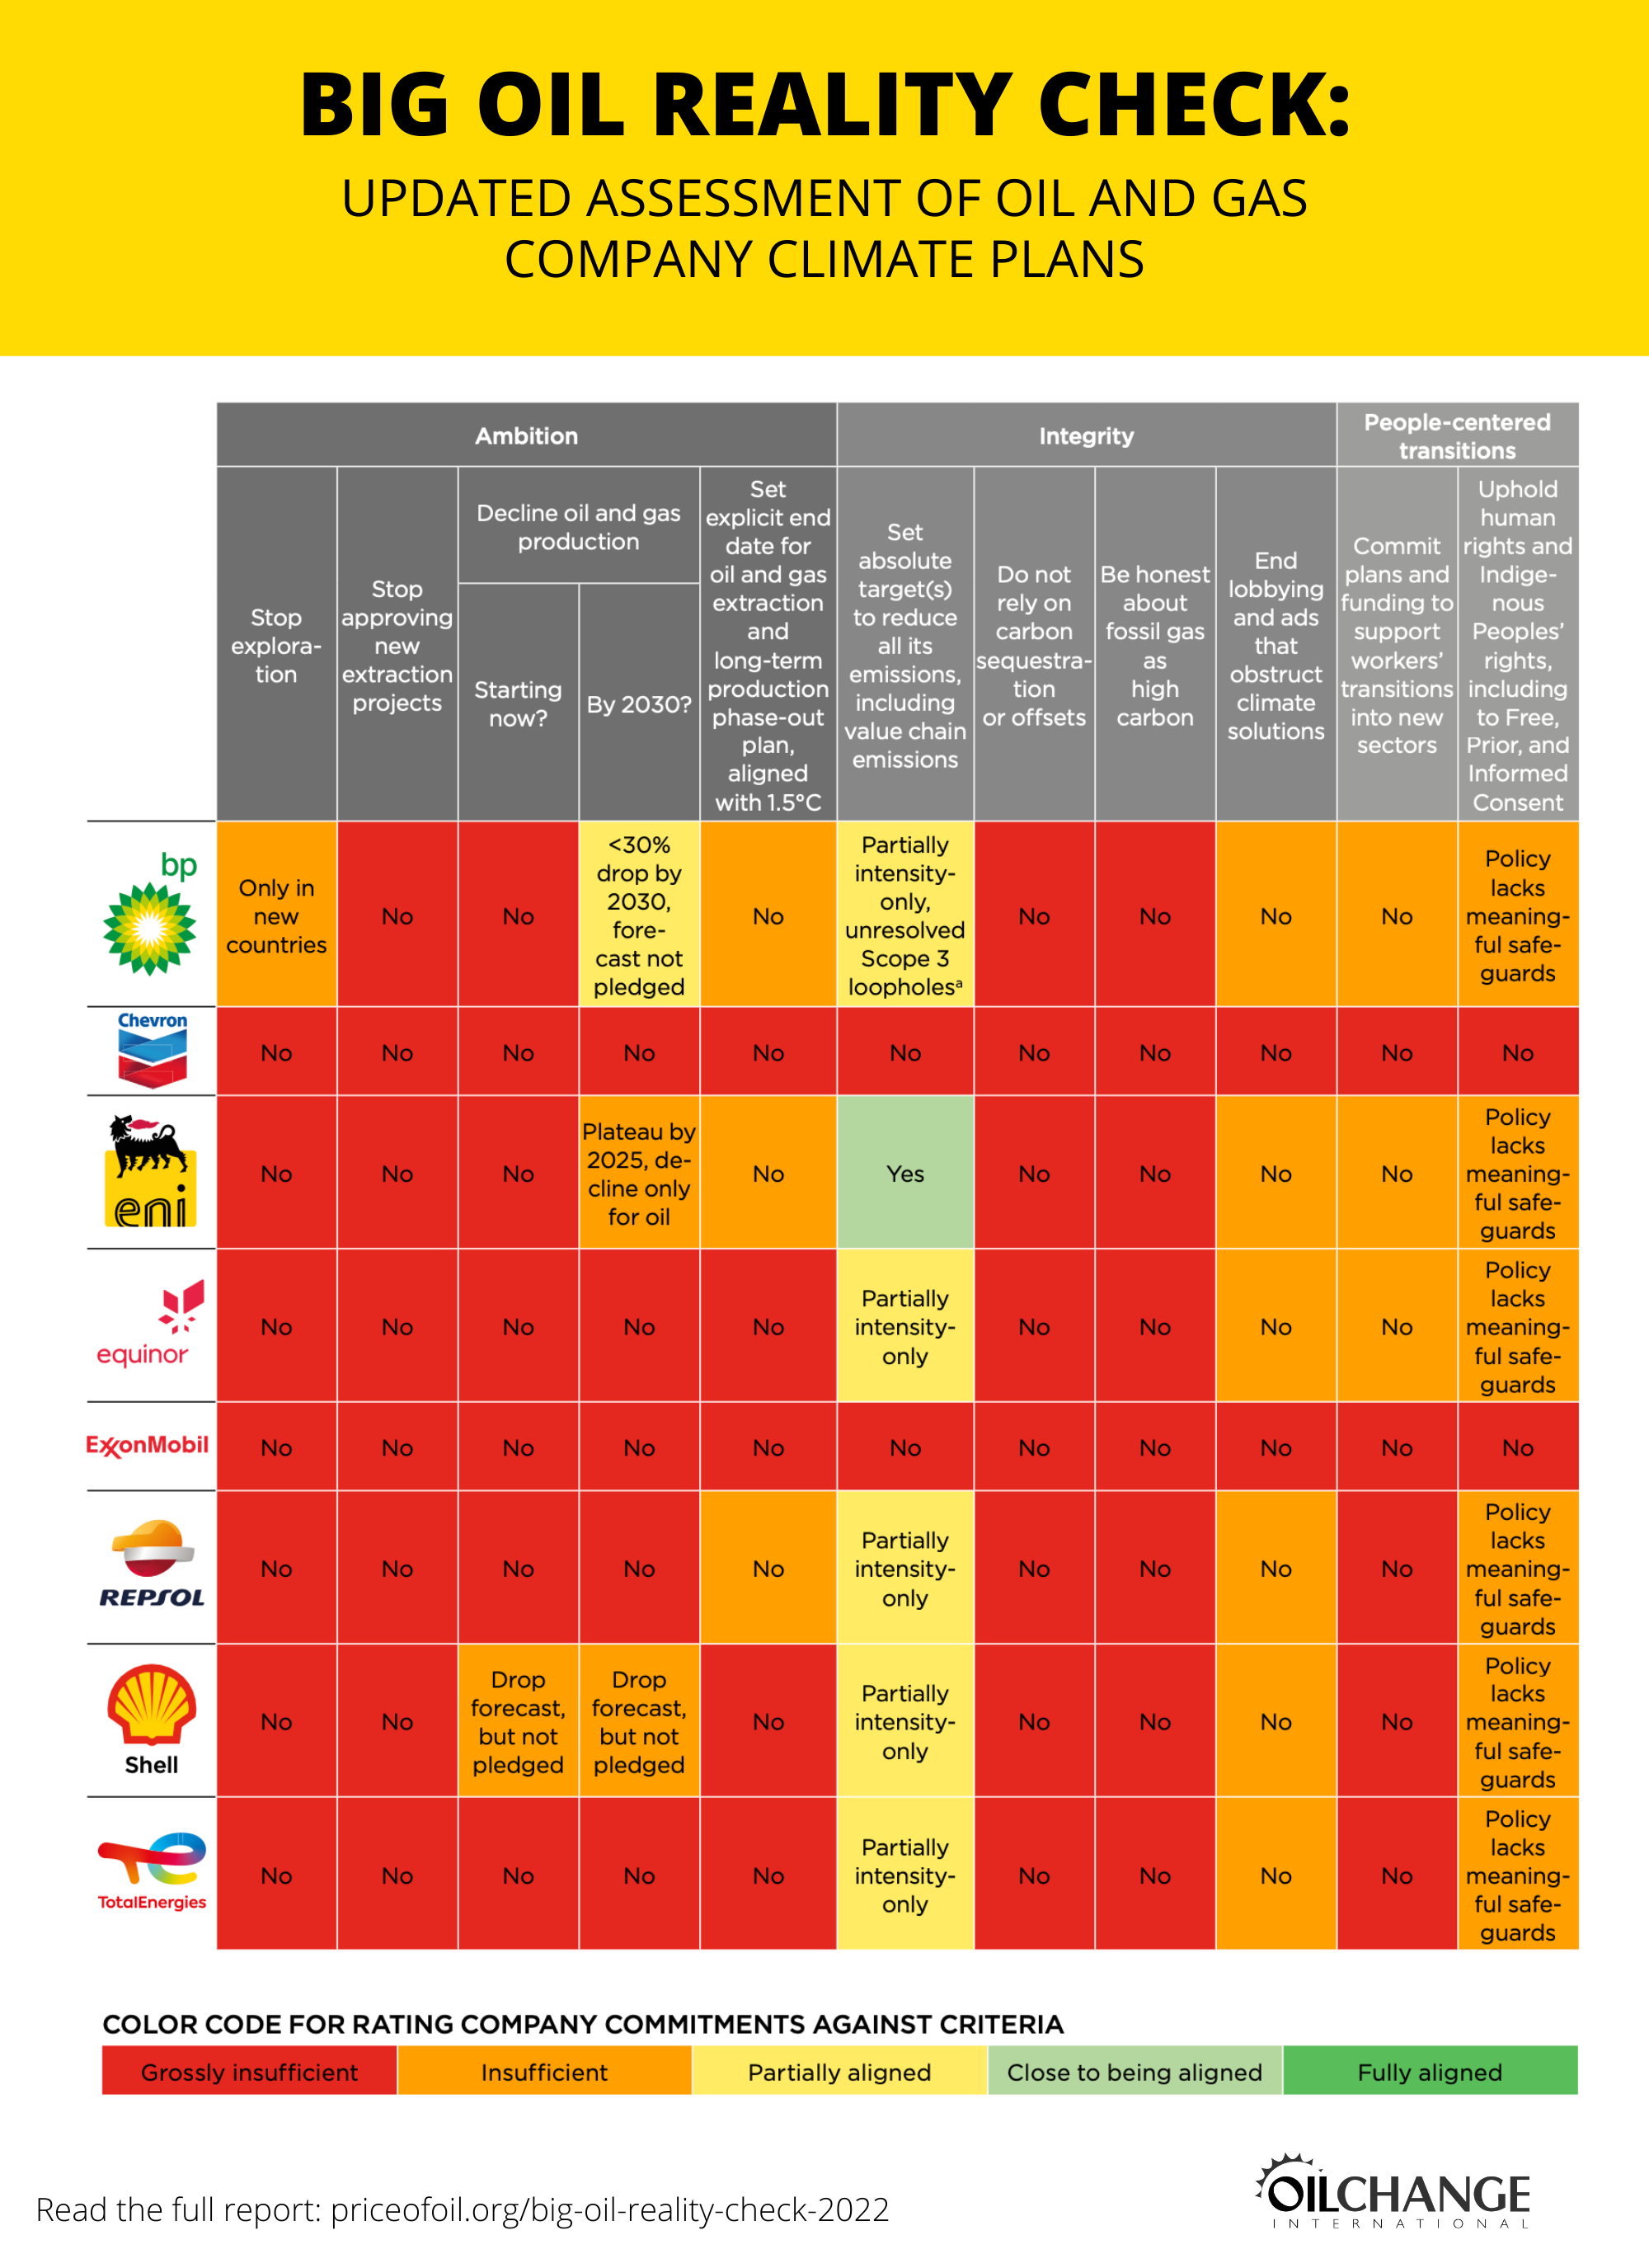 Tabelle der Klimaschutzpläne der acht untersuchten Öl- und Gasunternehmen.